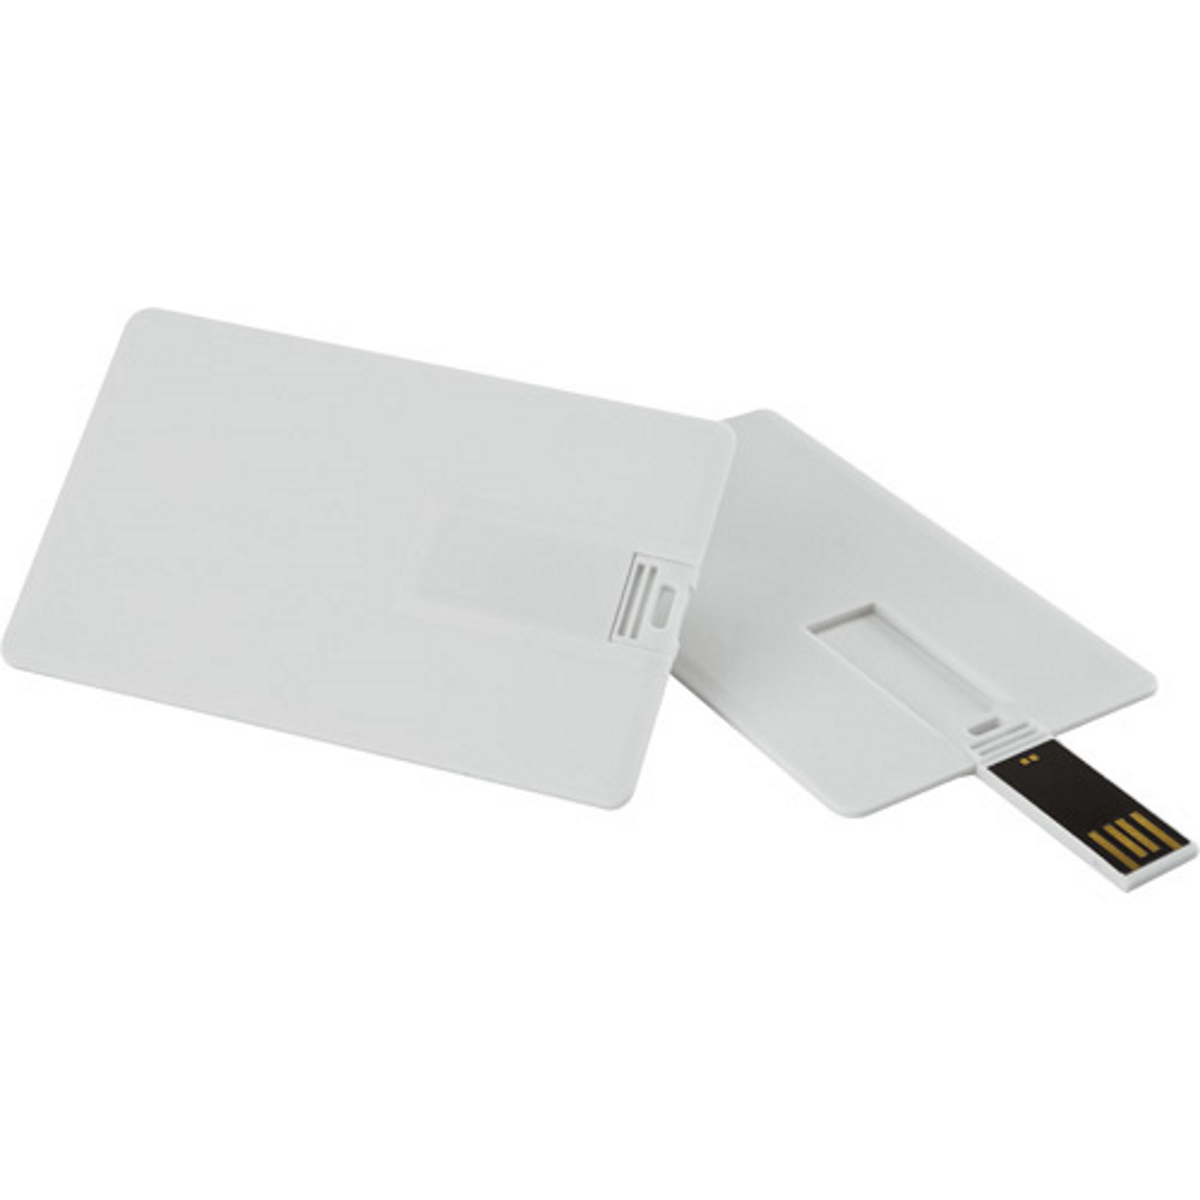 USB GERMANY 64 ® (Weiss, Kreditkarte GB) USB-Stick